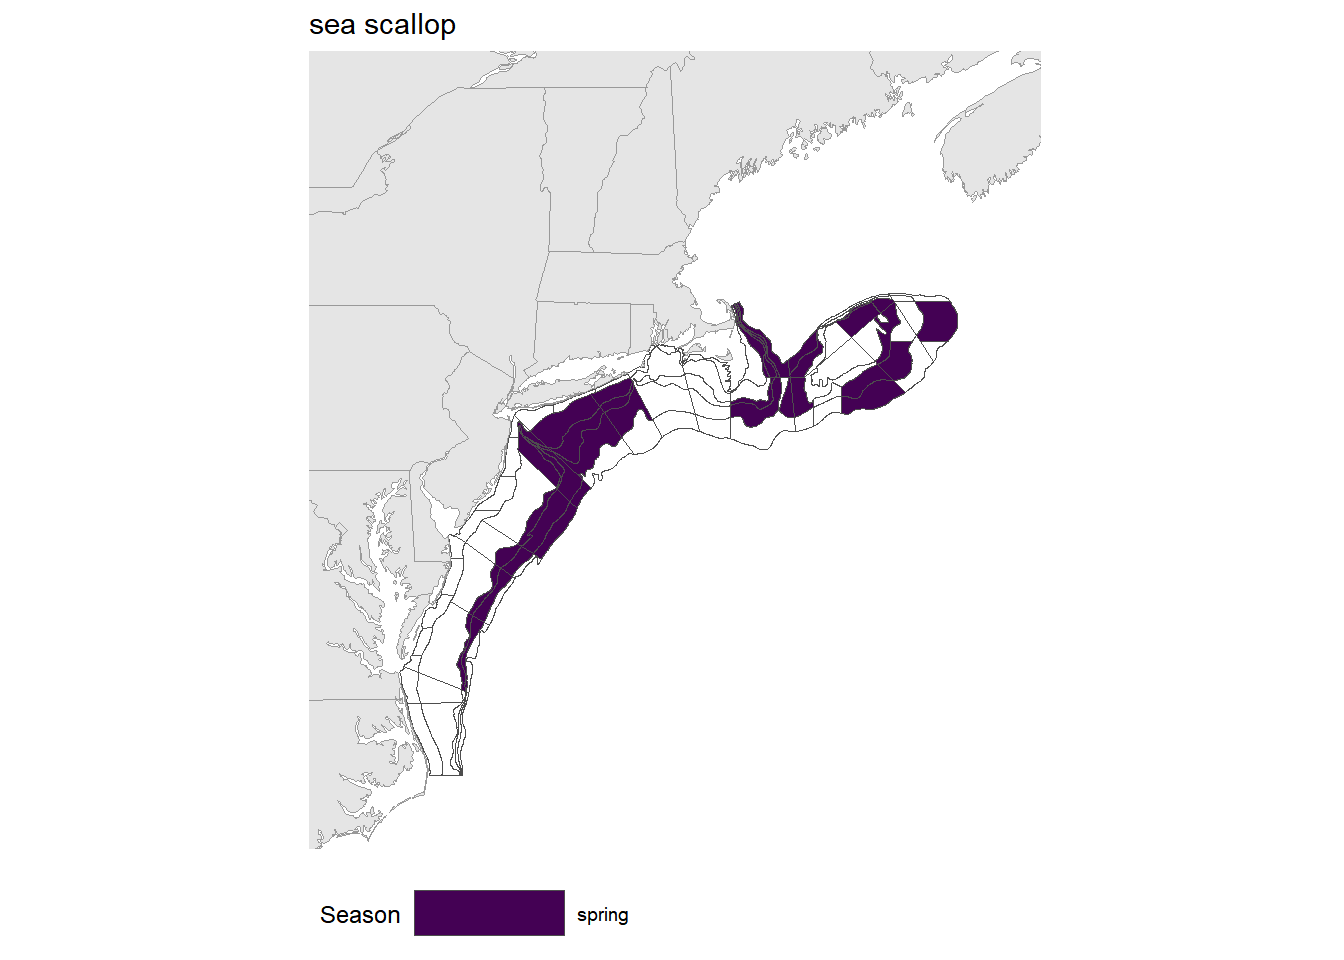 Strata map for the sea scallop (Placopecten magellanicus) stock on the NE shelf.